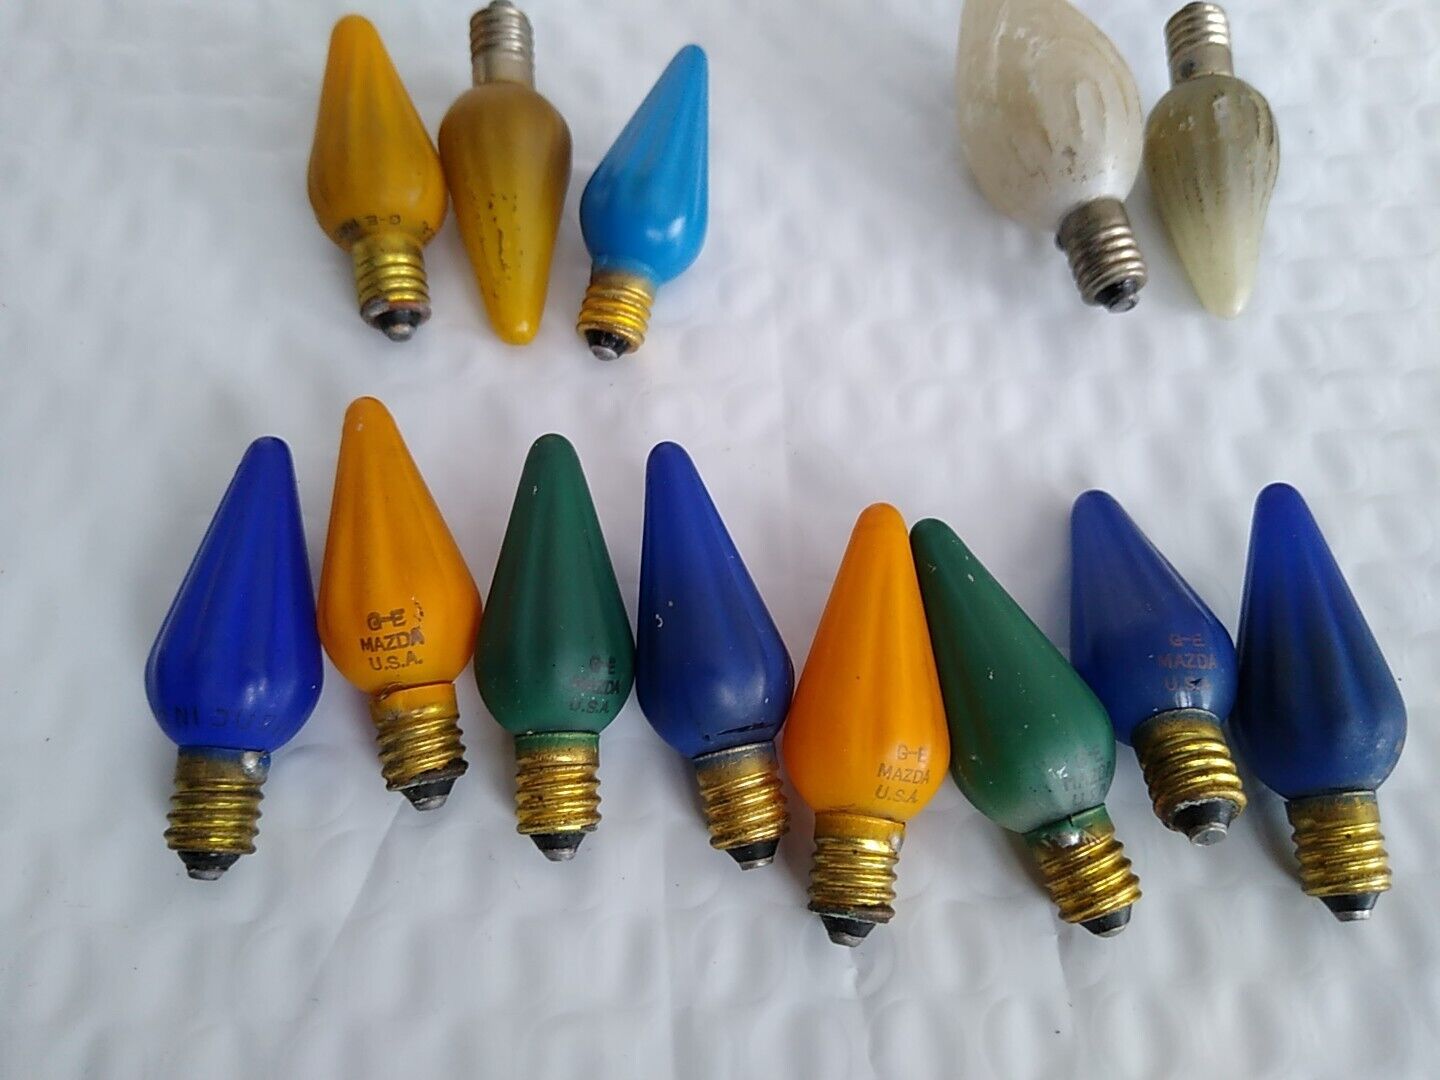 Vintage GE Mazda Lamp Christmas Light Bulbs C6 